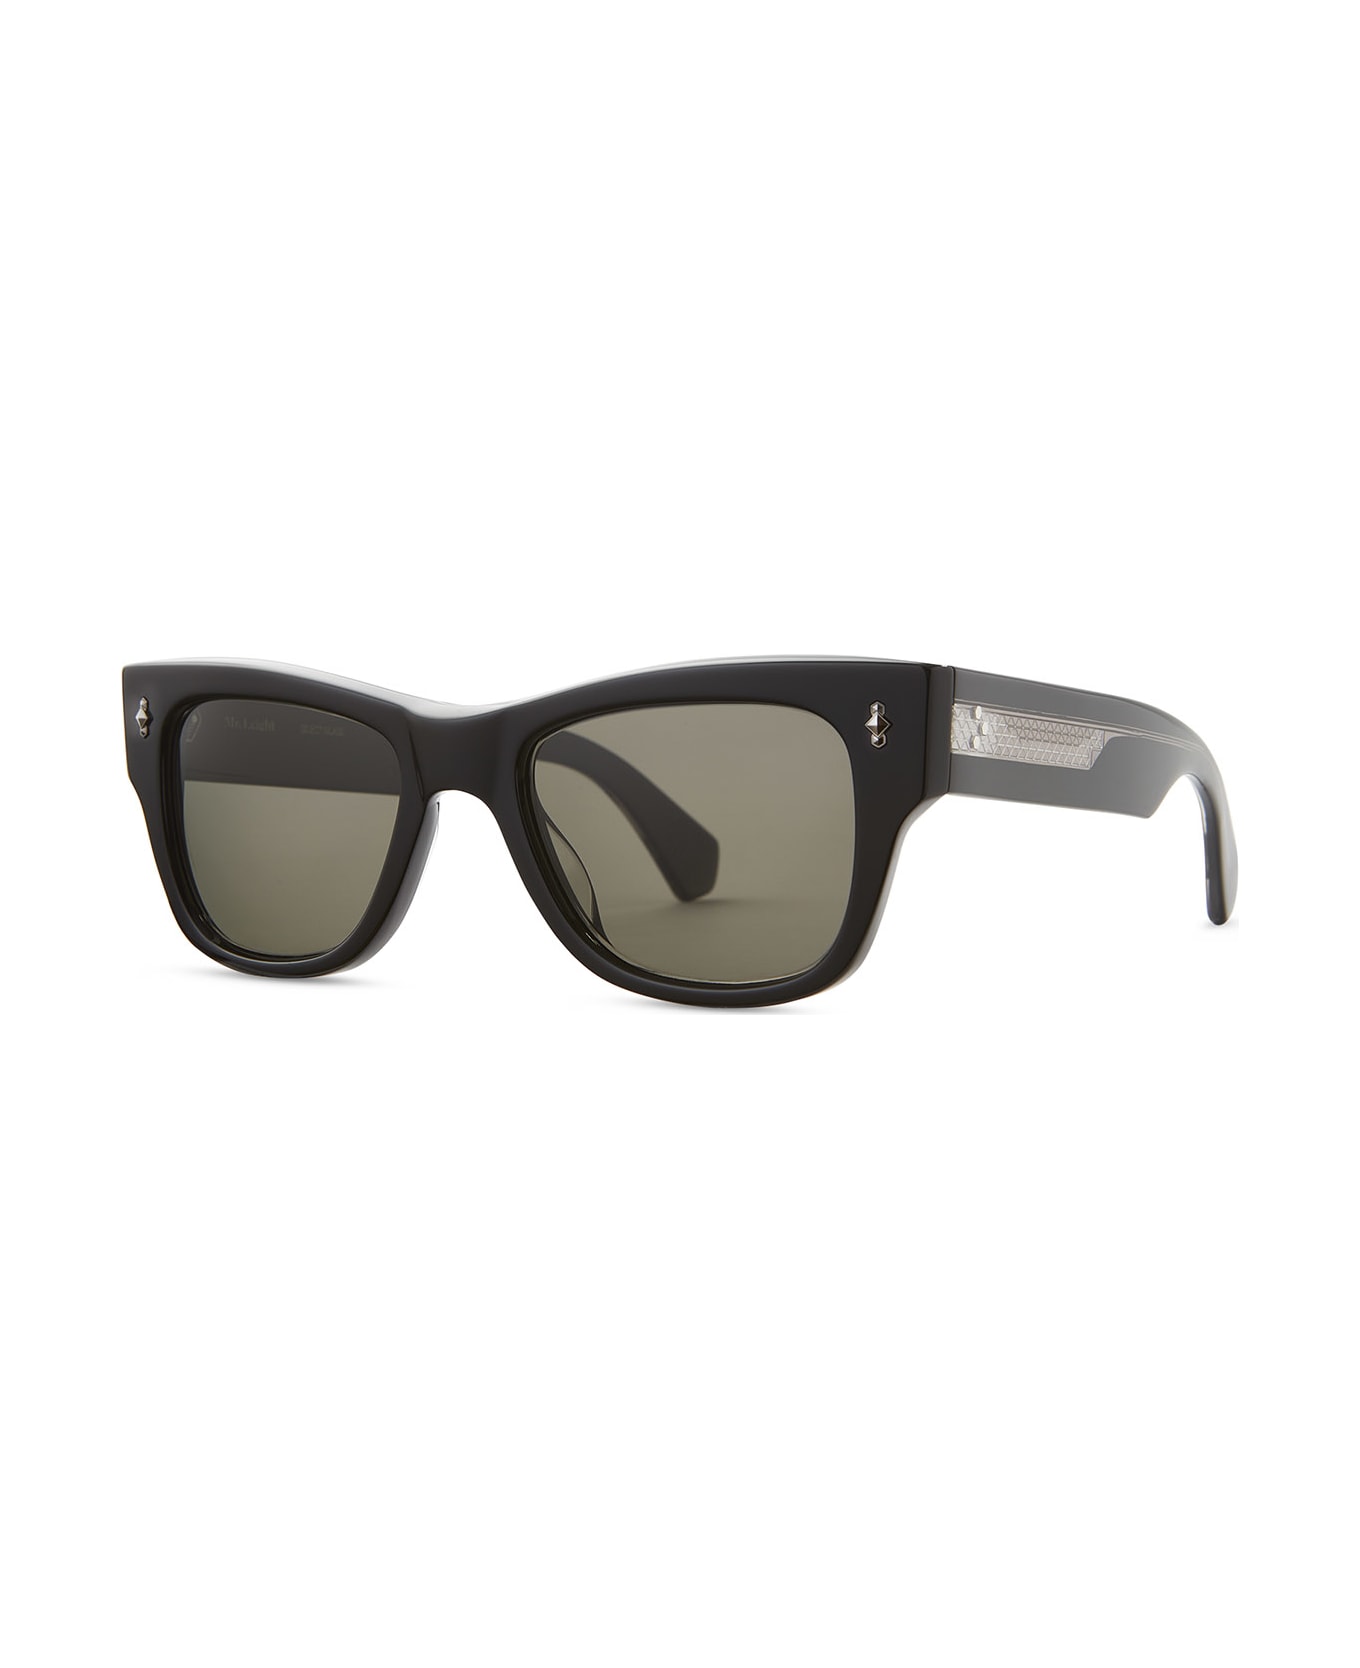 Mr. Leight Duke S Black-gunmetal Sunglasses -  Black-Gunmetal